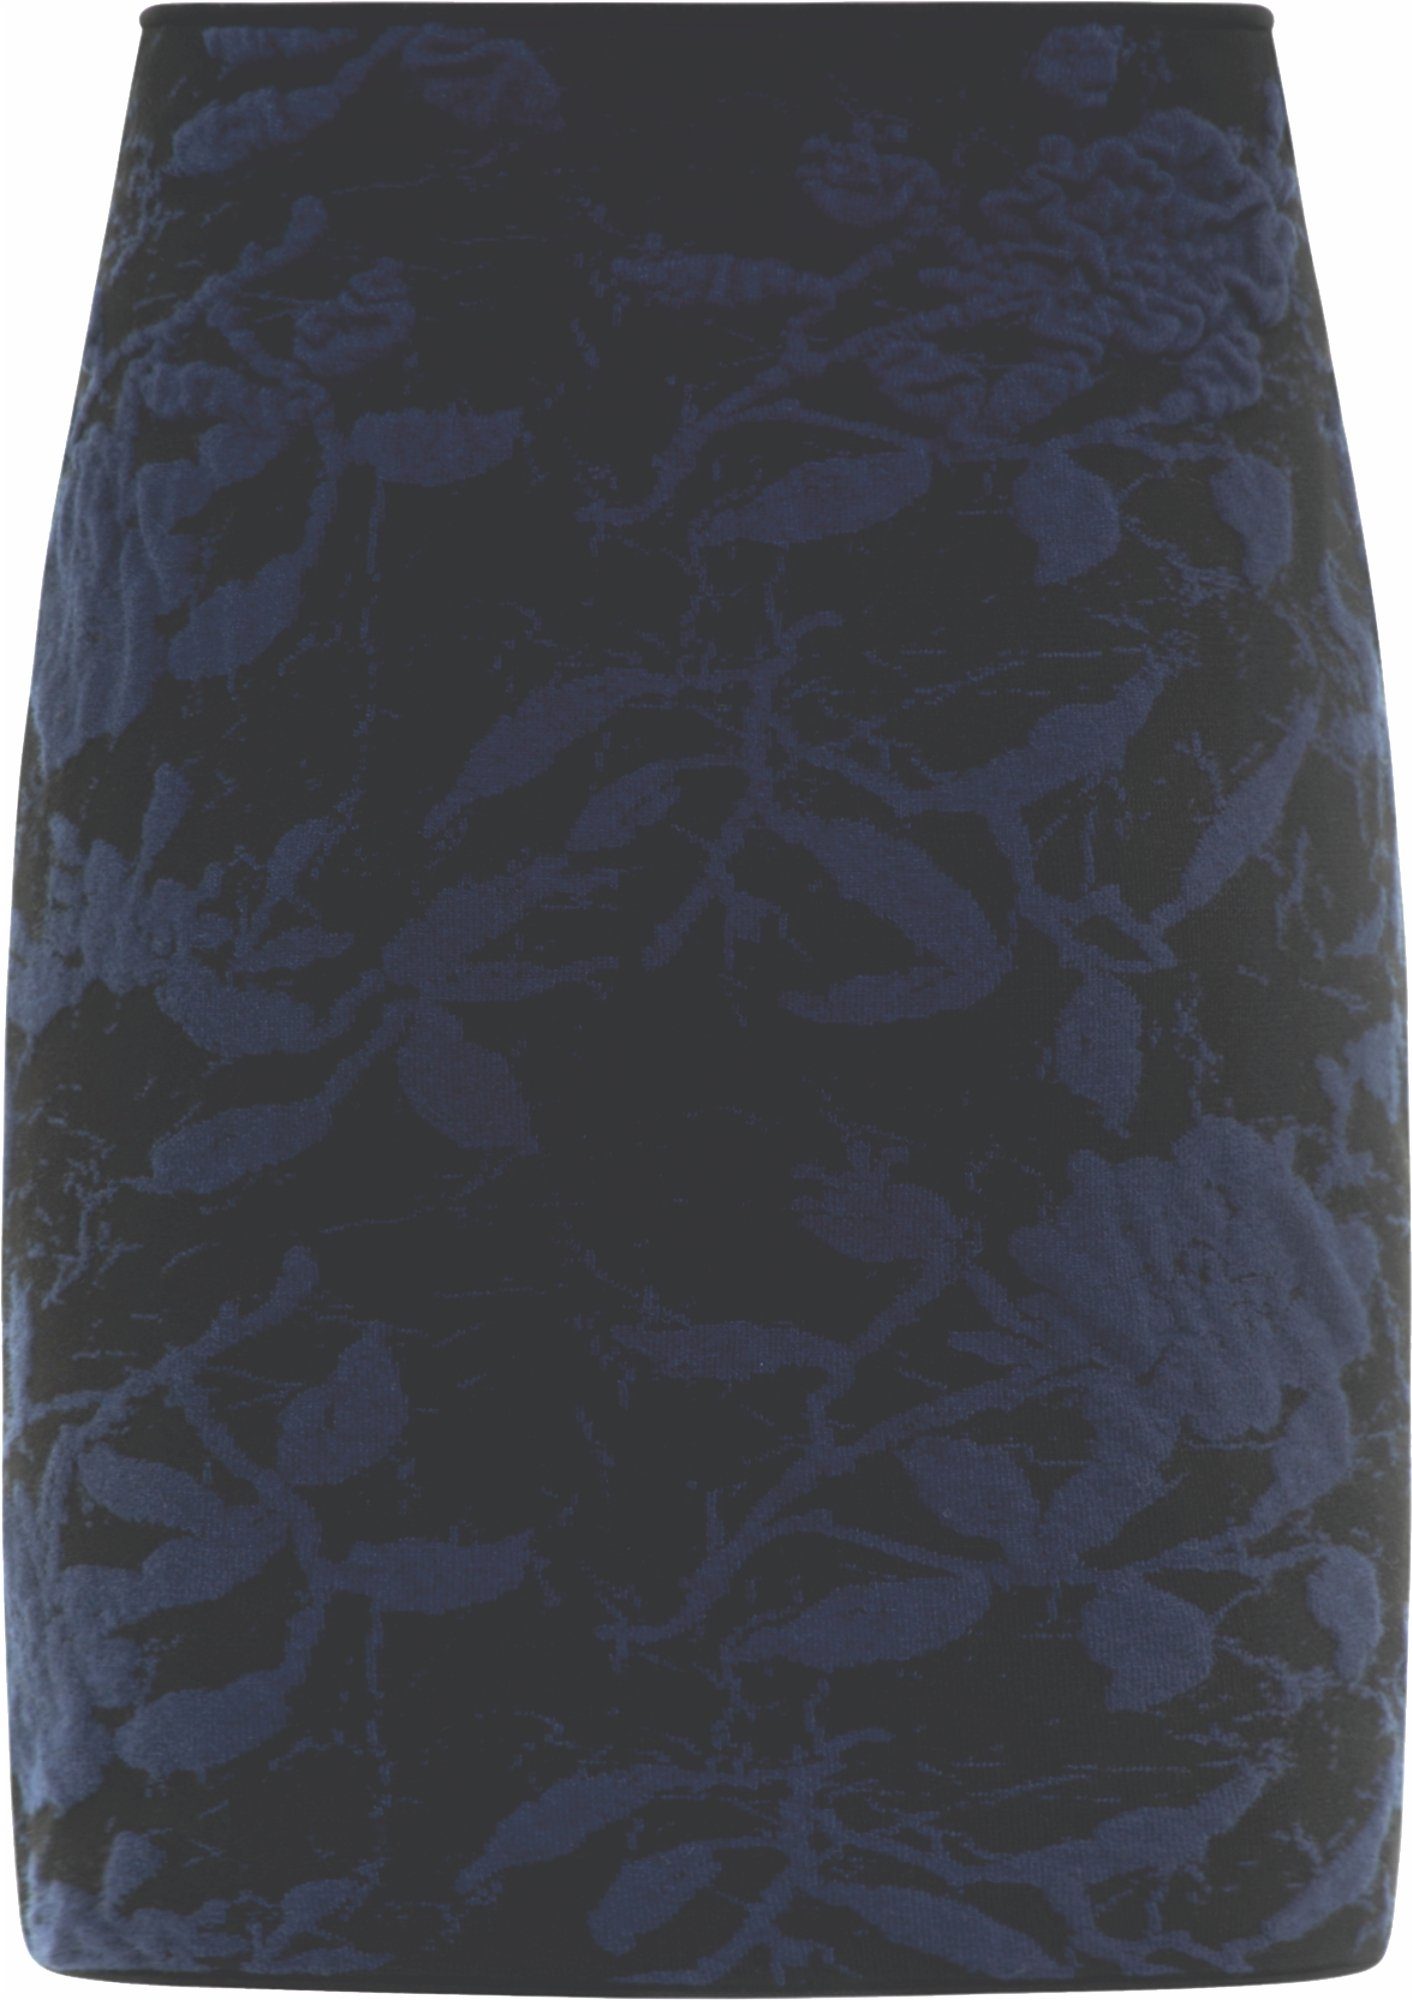 MIA MAI Strickrock HELEN (mit Gummibund) florale 3D gestrickte Muster Nero-Navy | Strickröcke